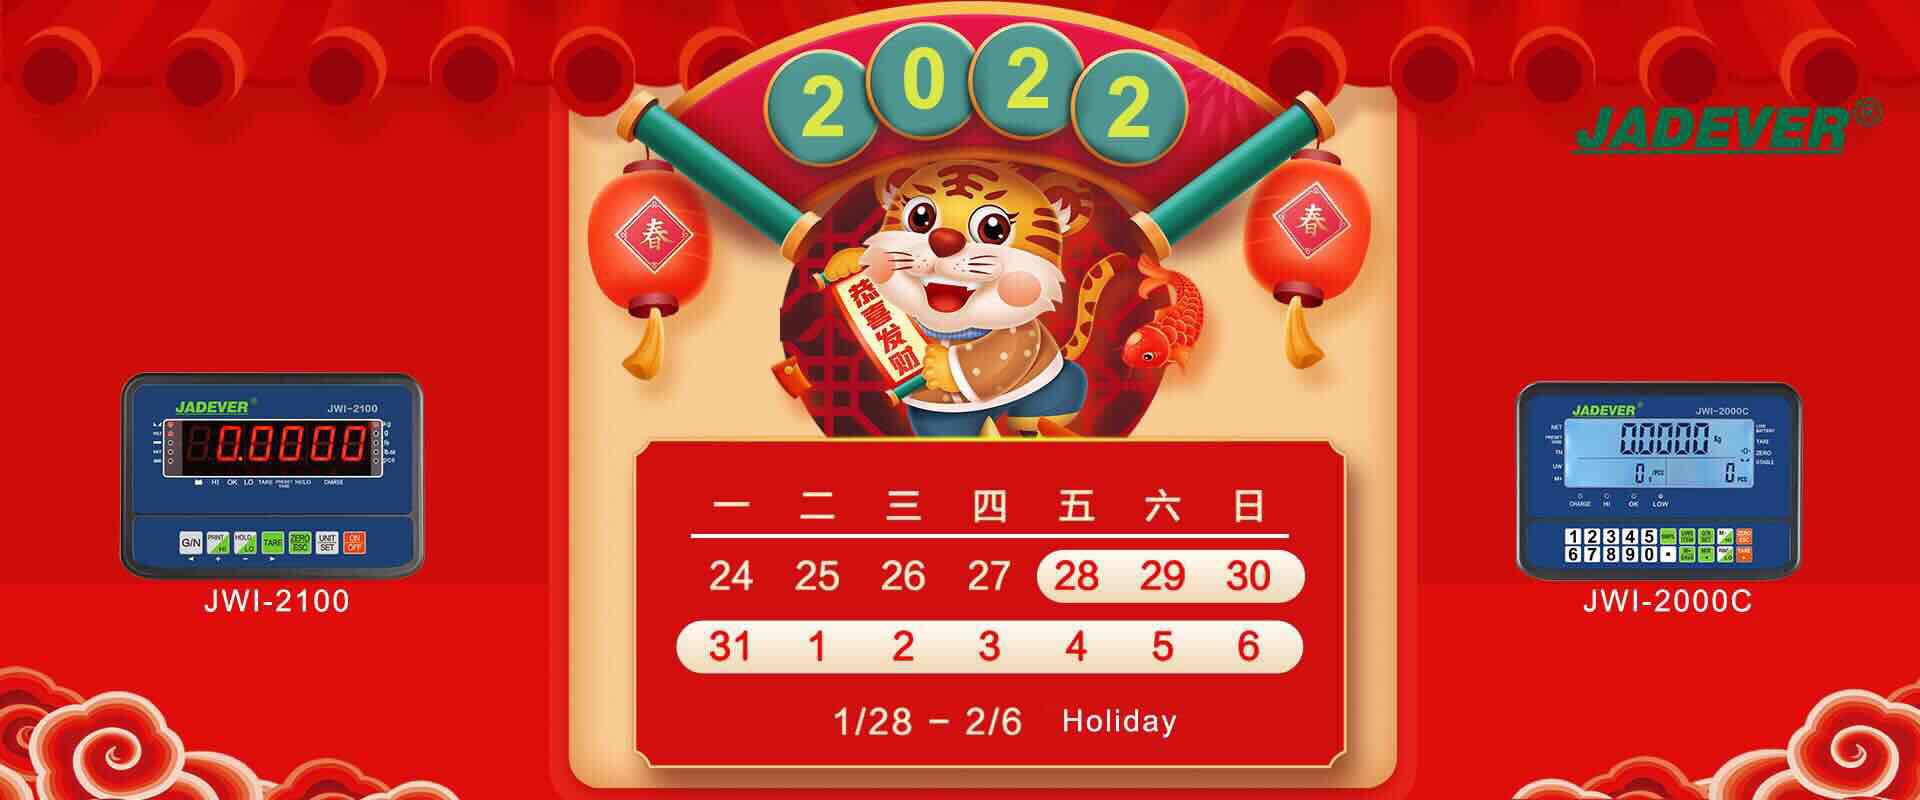 Feiertagsmitteilung - chinesisches Neujahrsfest 2022